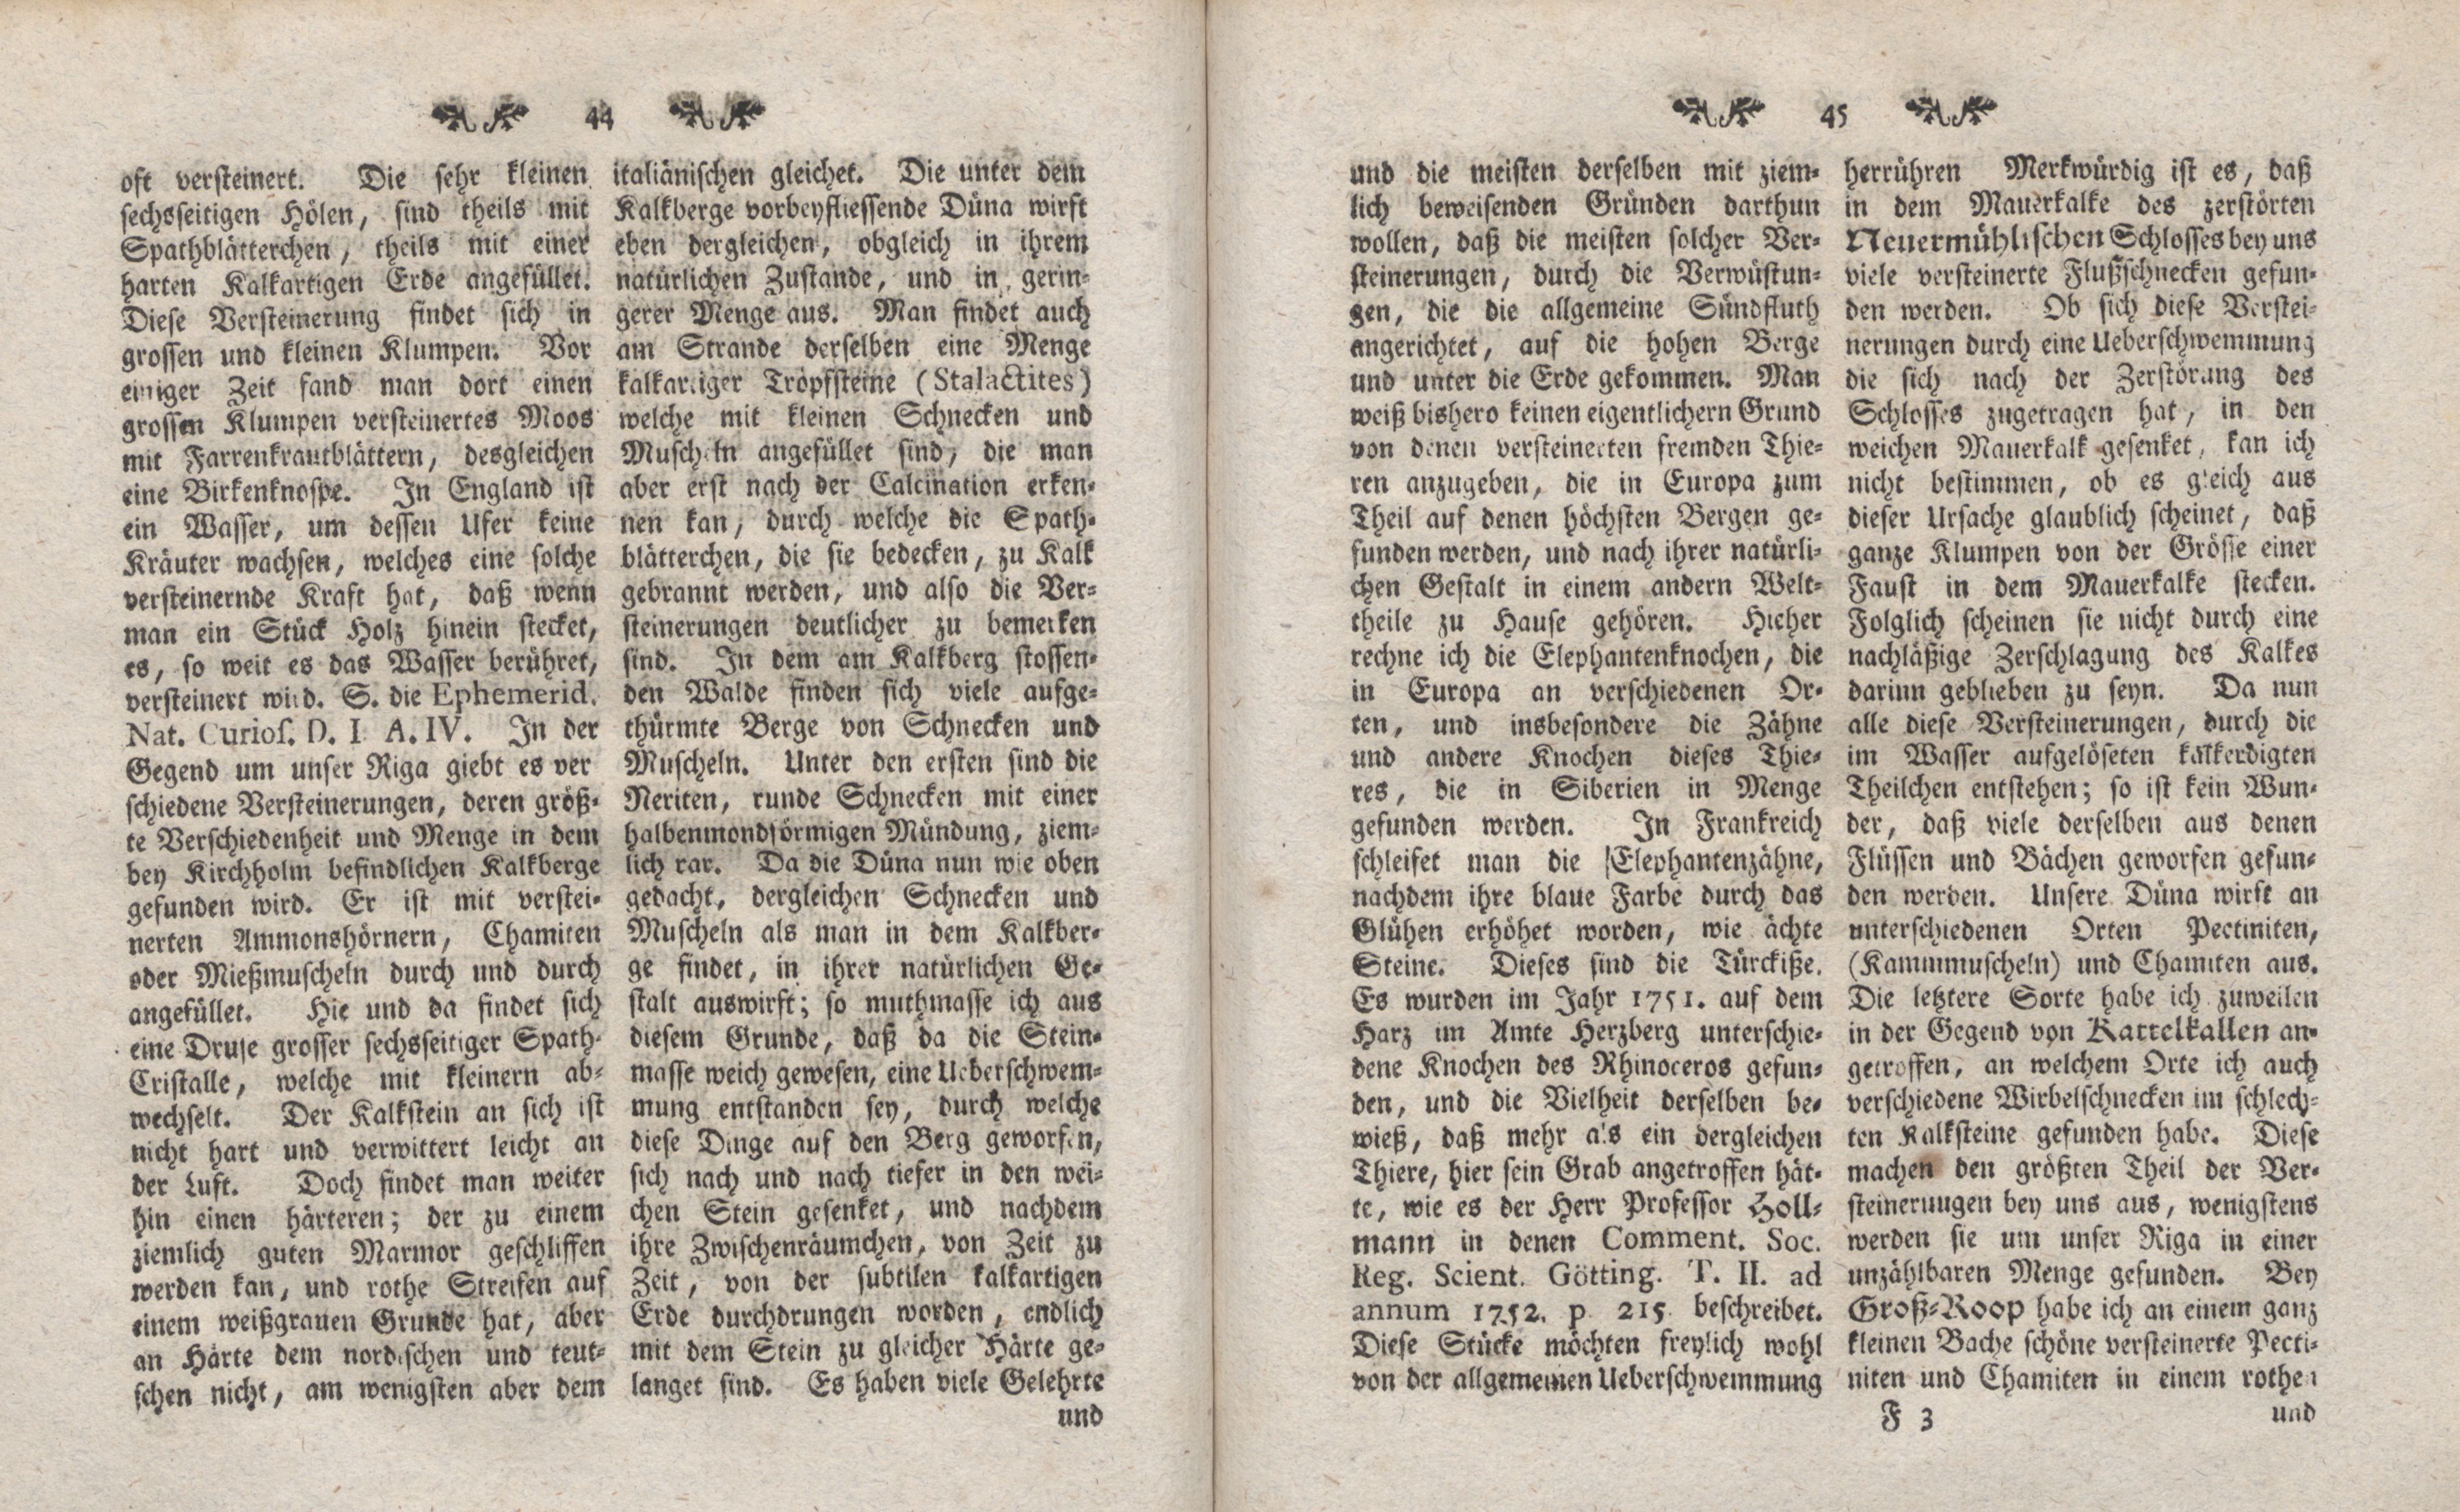 Gelehrte Beyträge zu den Rigischen Anzeigen 1762 (1762) | 23. (44-45) Main body of text